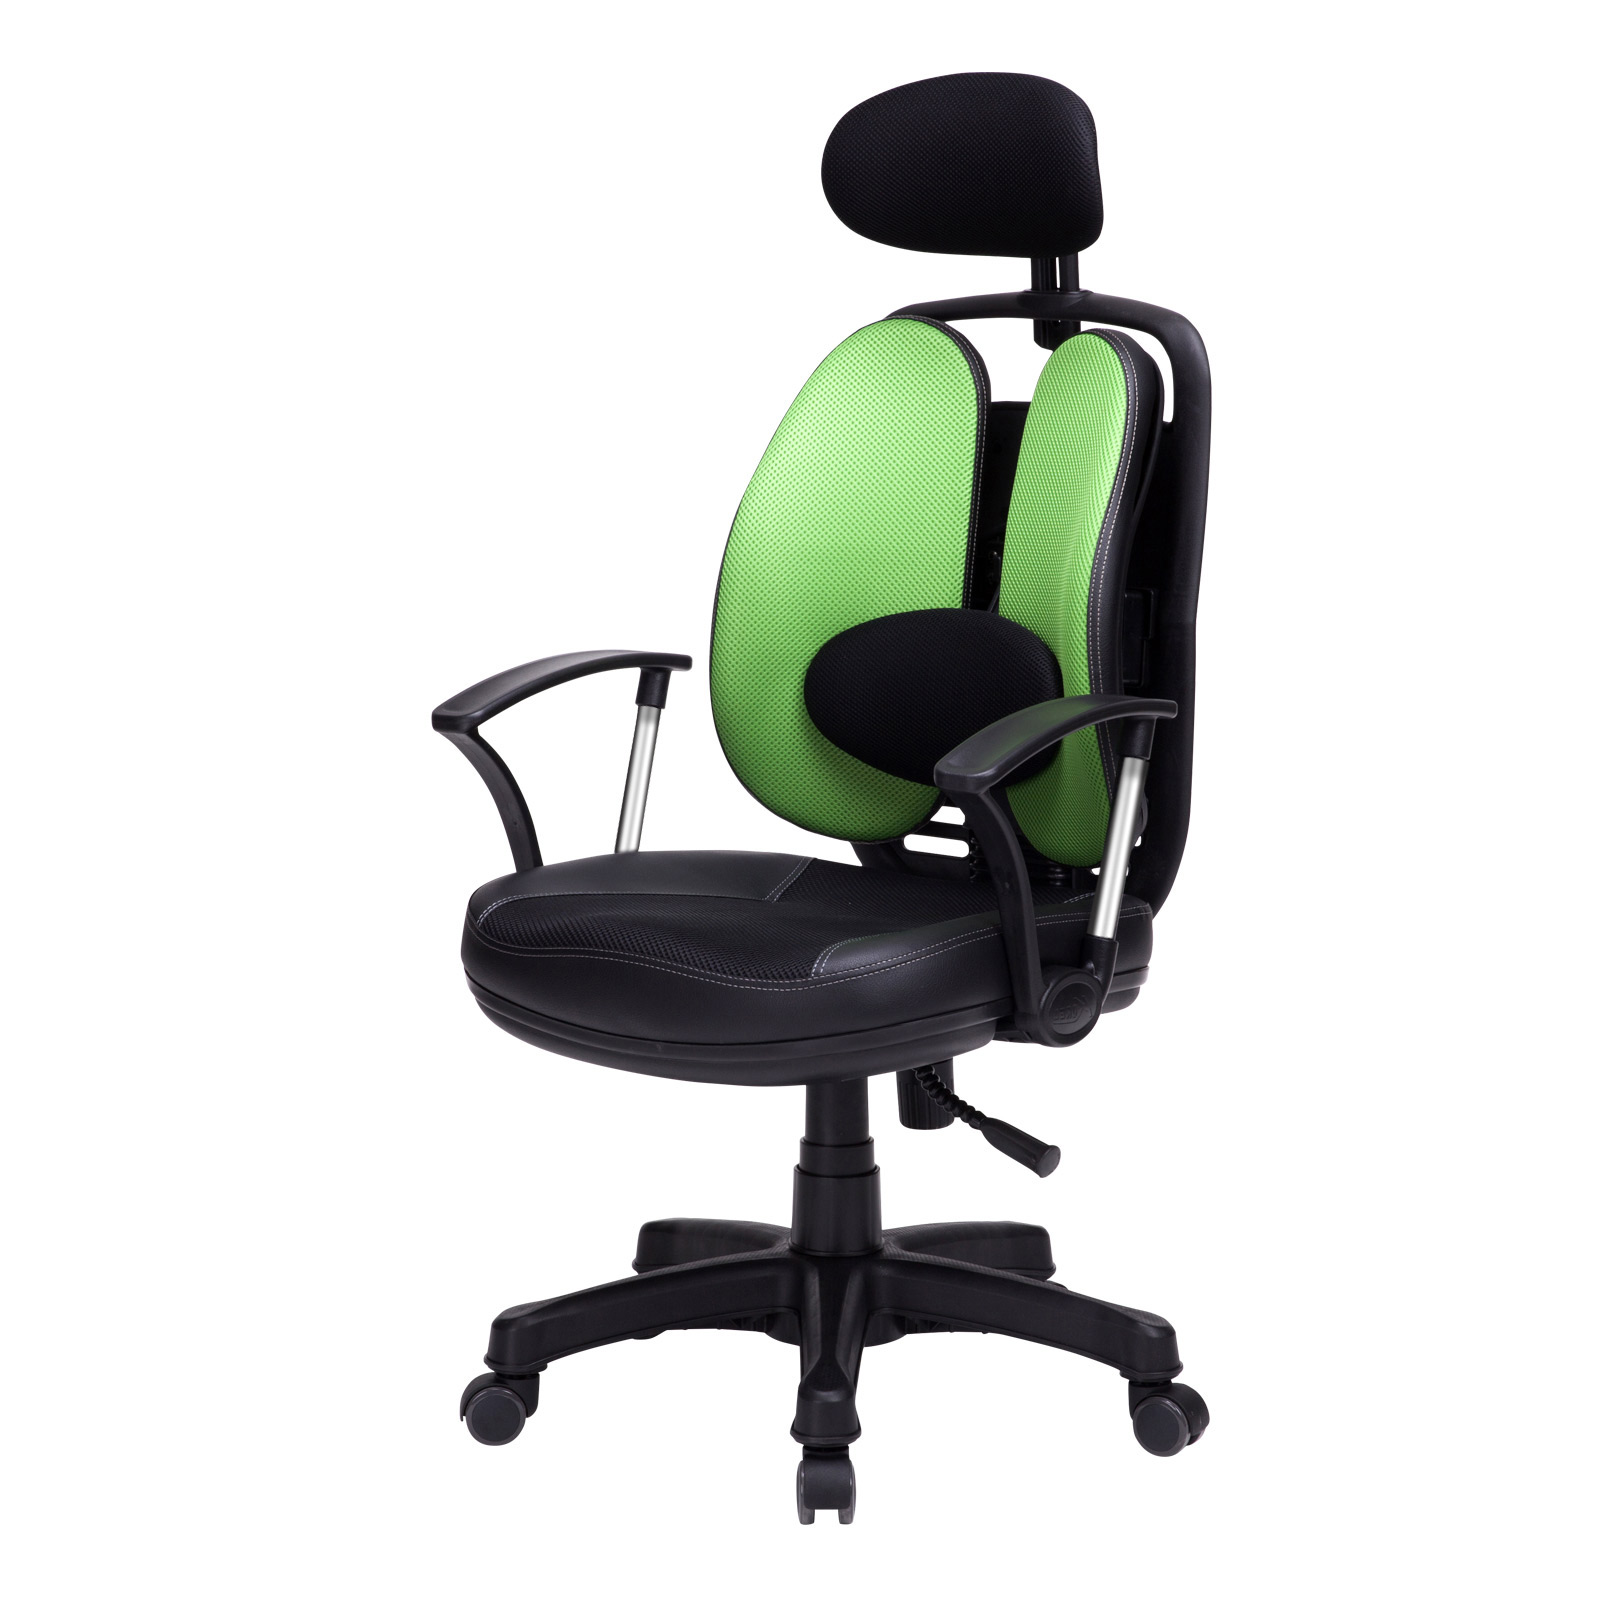 Superbambi: Scoope Design's Multitasking Chair - Core77